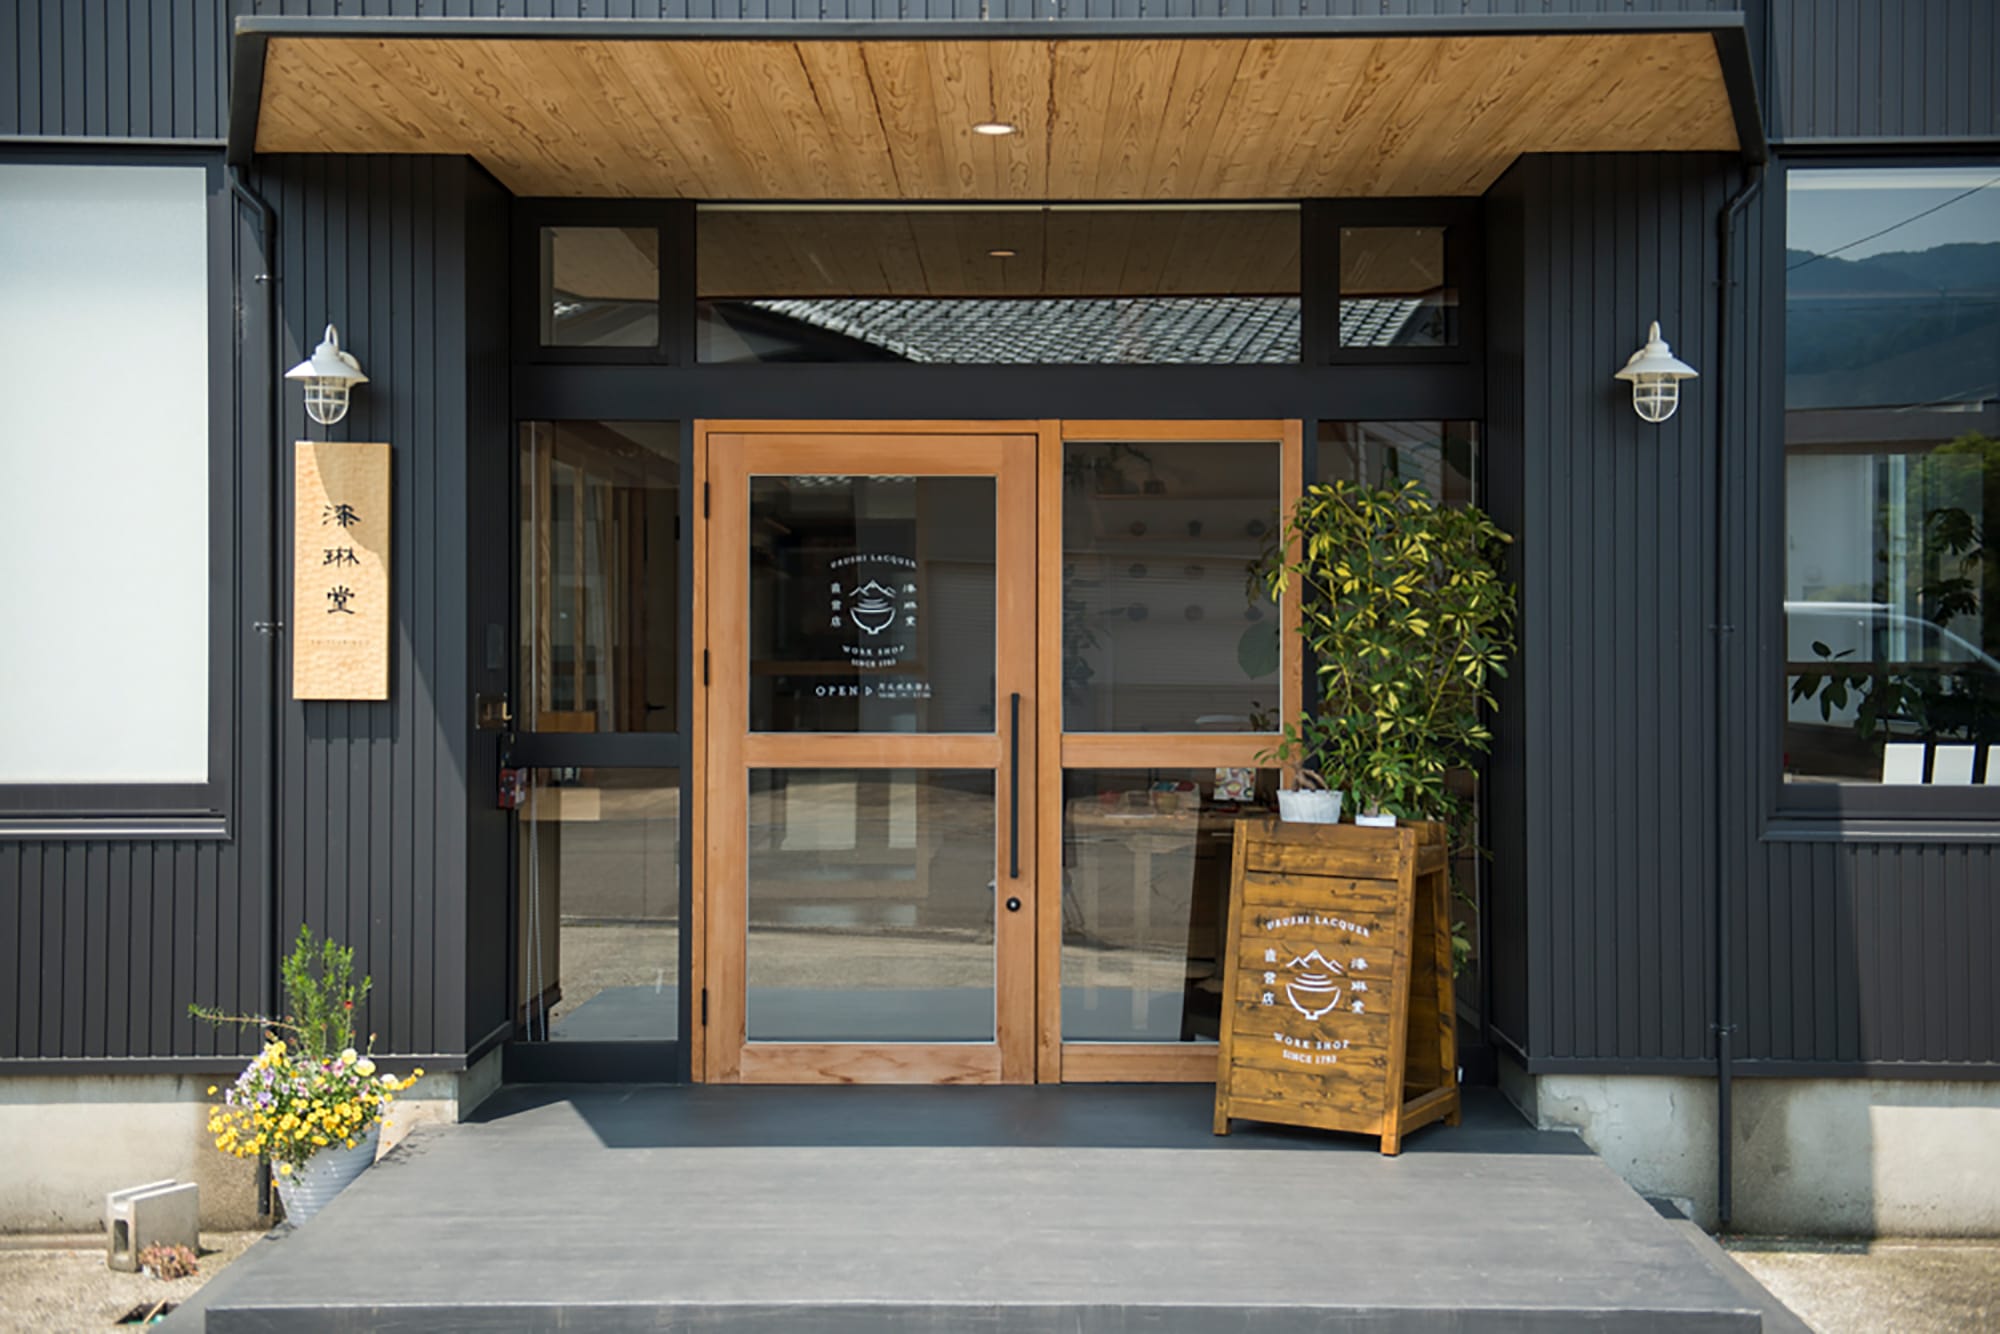 福井県鯖江市にある漆琳堂の直営店。ここはショップ、ショールーム、ワークショップがあり、工房見学も行っている。